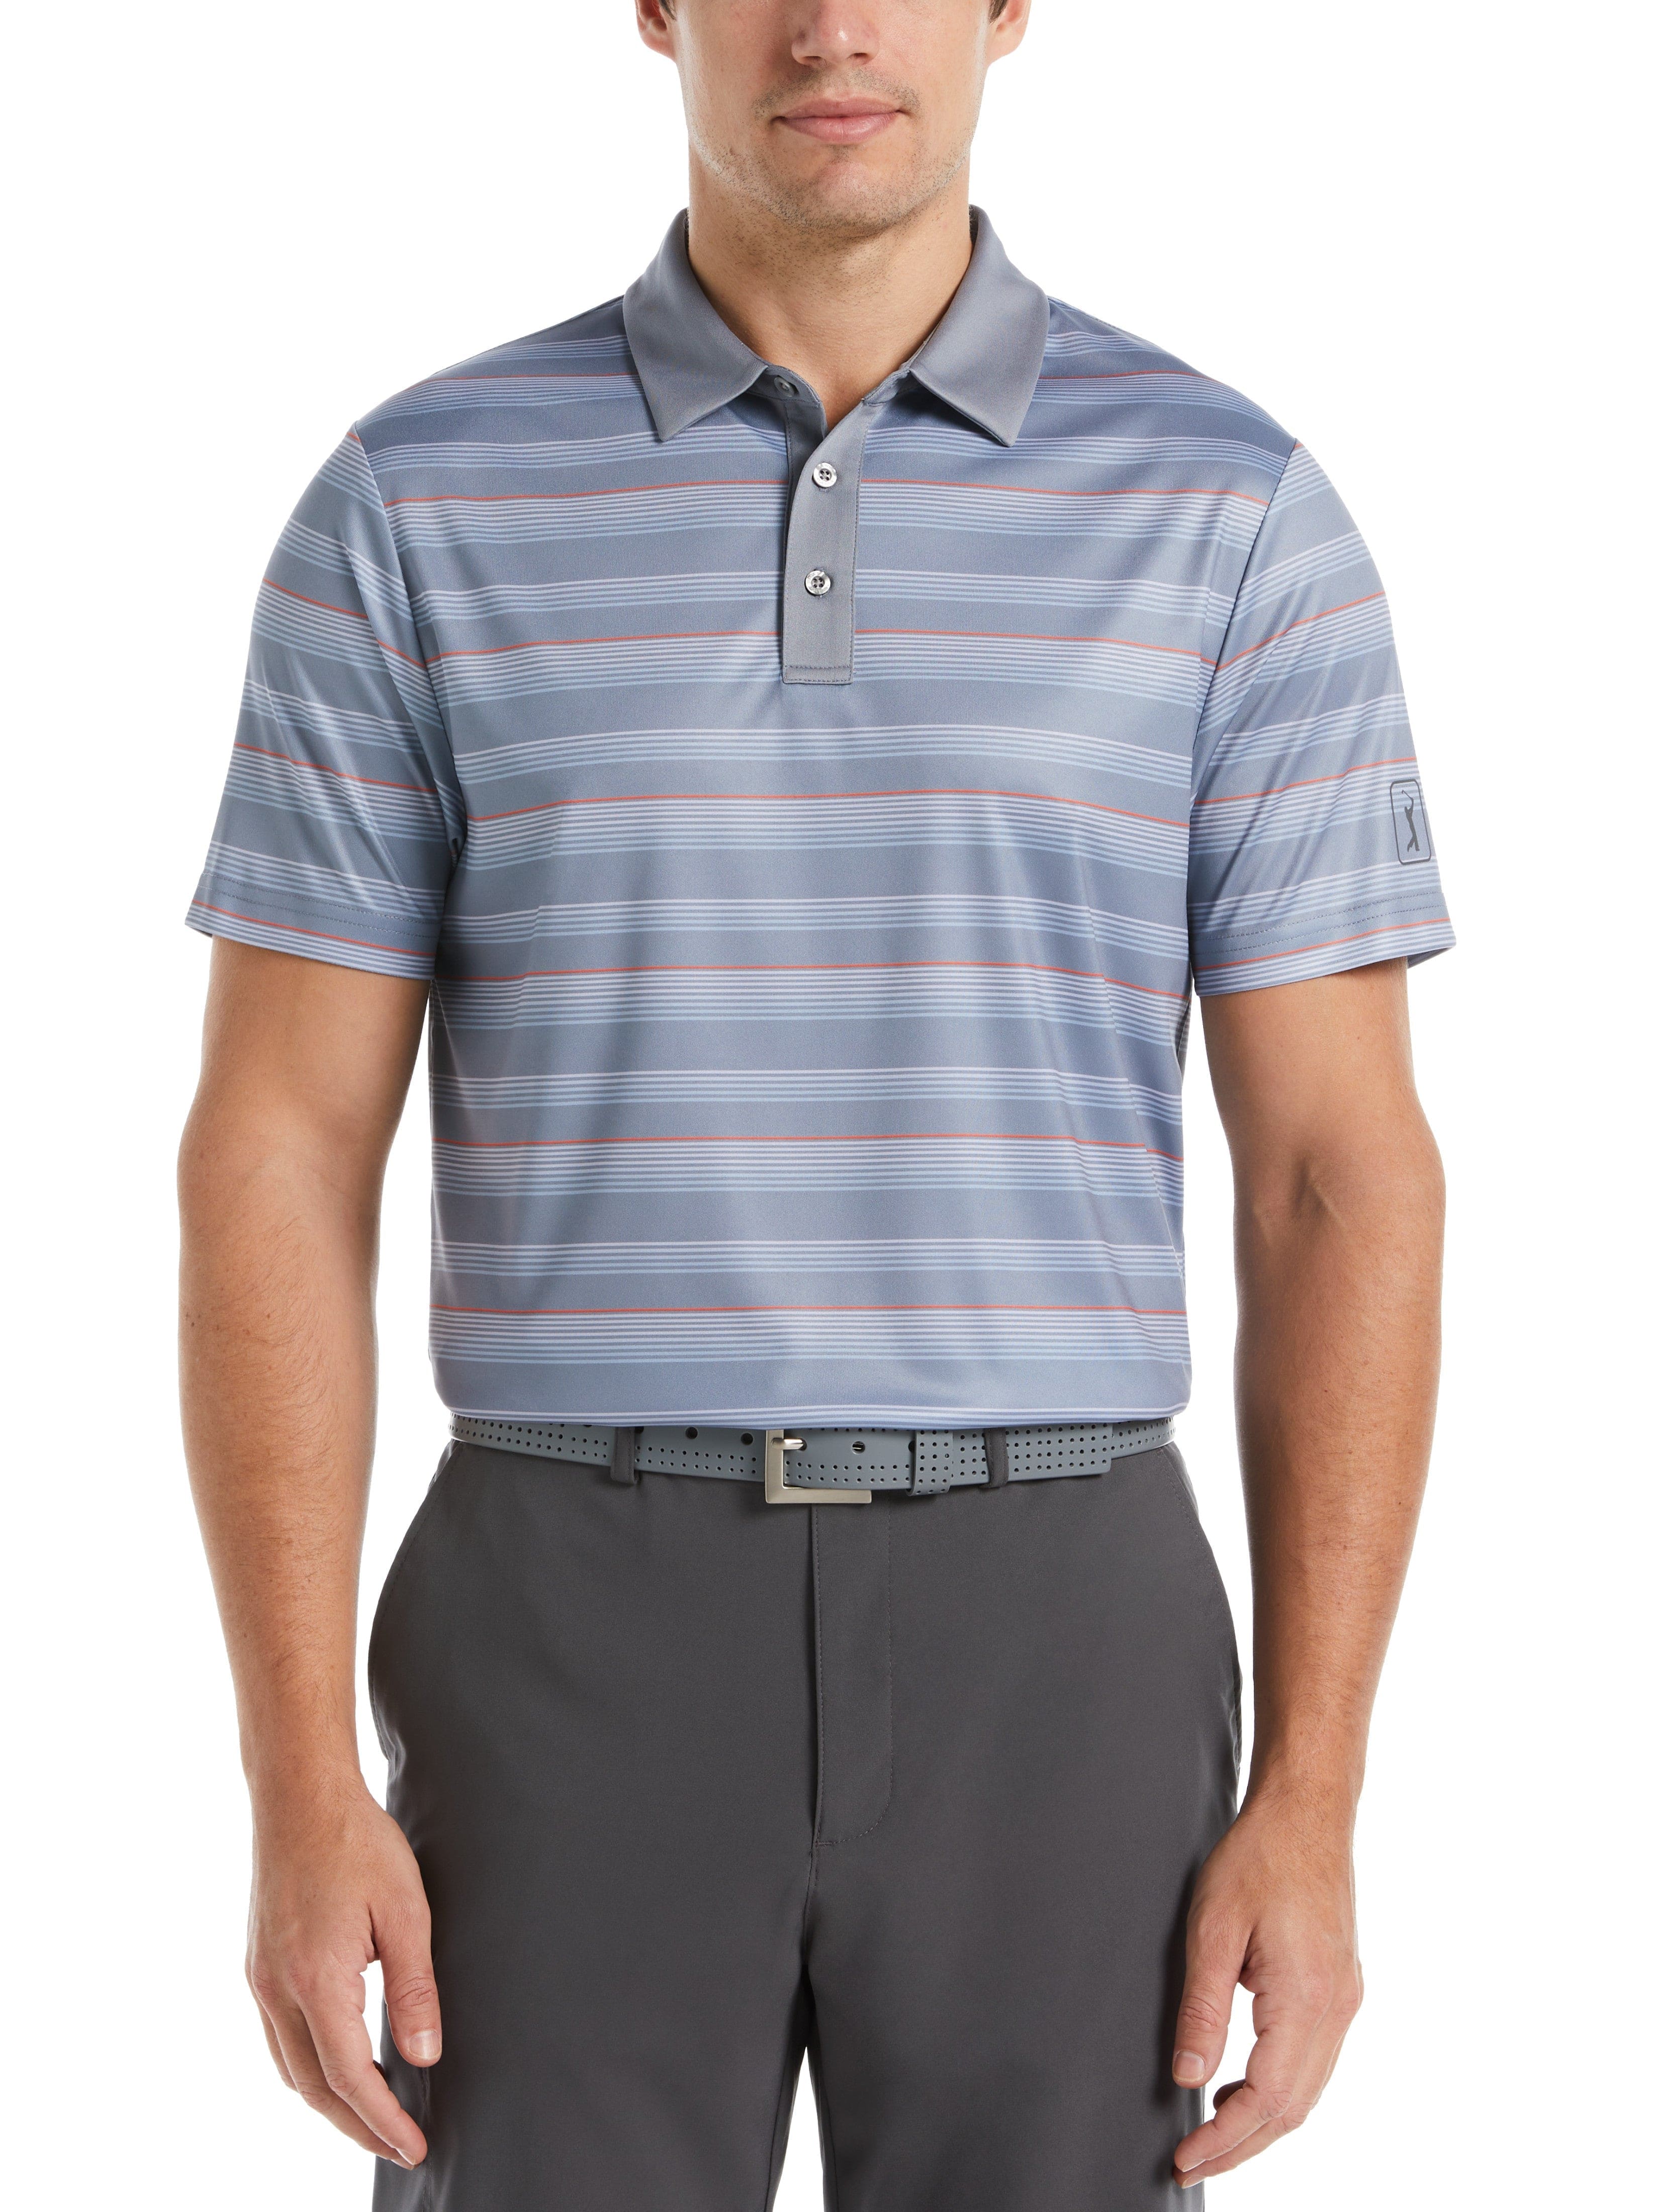 PGA TOUR Apparel Mens Allover Energy Stripe Golf Polo Shirt, Size Small, Tradewinds Gray, 100% Polyester | Golf Apparel Shop